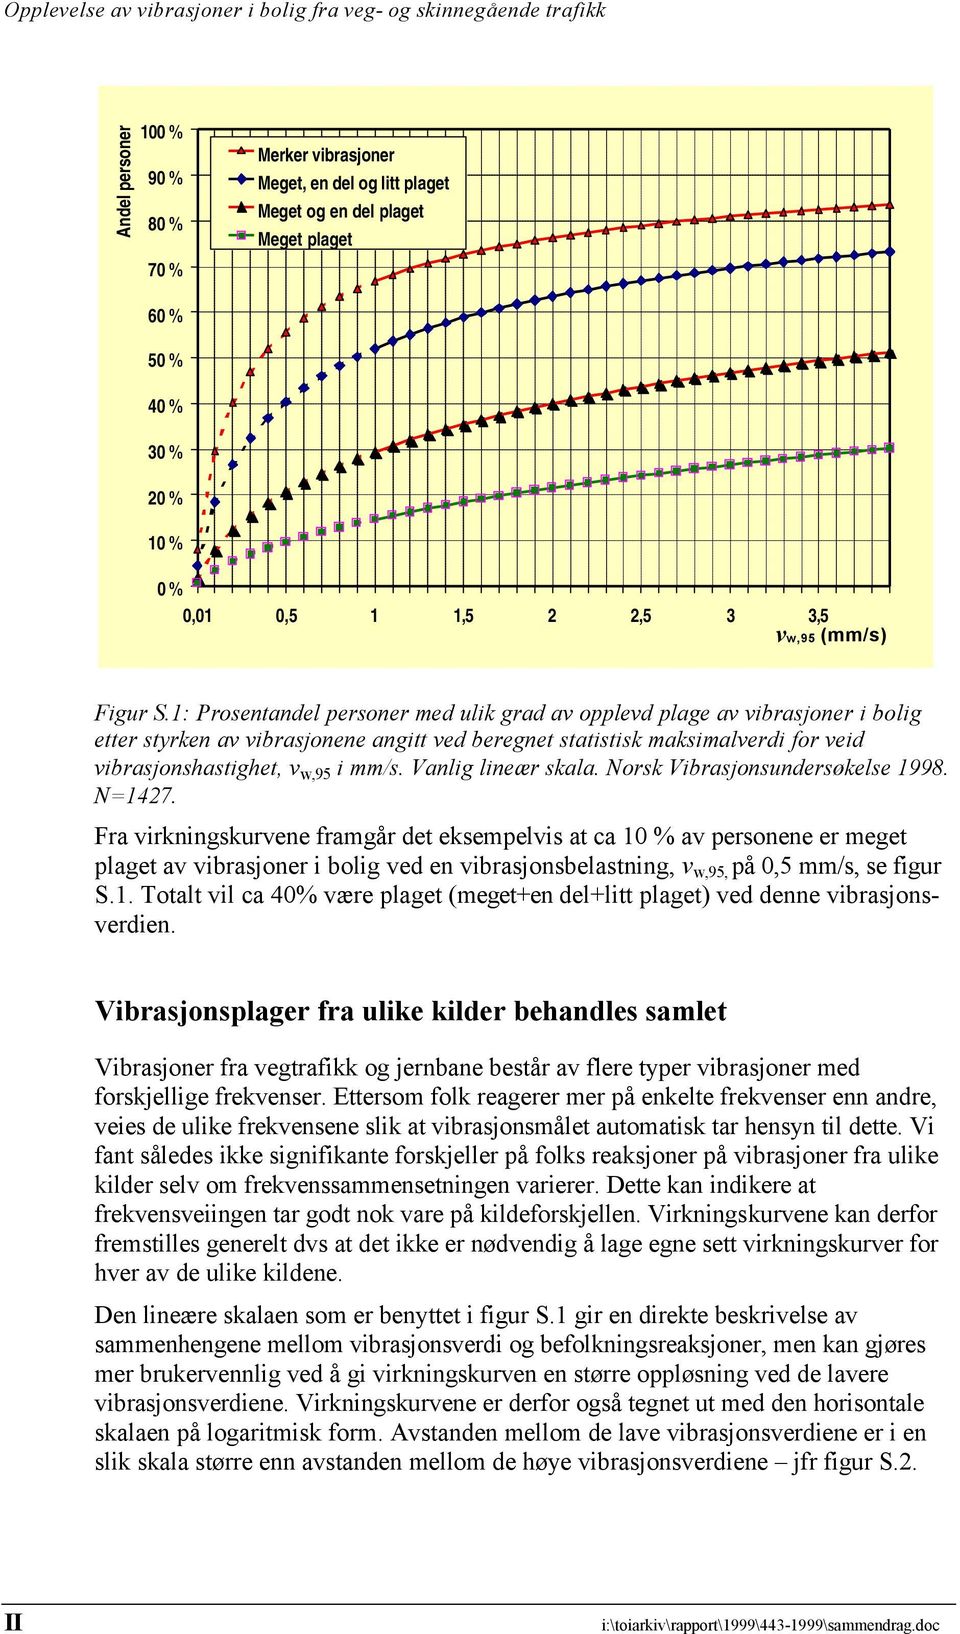 Vanlig lineær skala. Norsk Vibrasjonsundersøkelse 1998. N=1427.